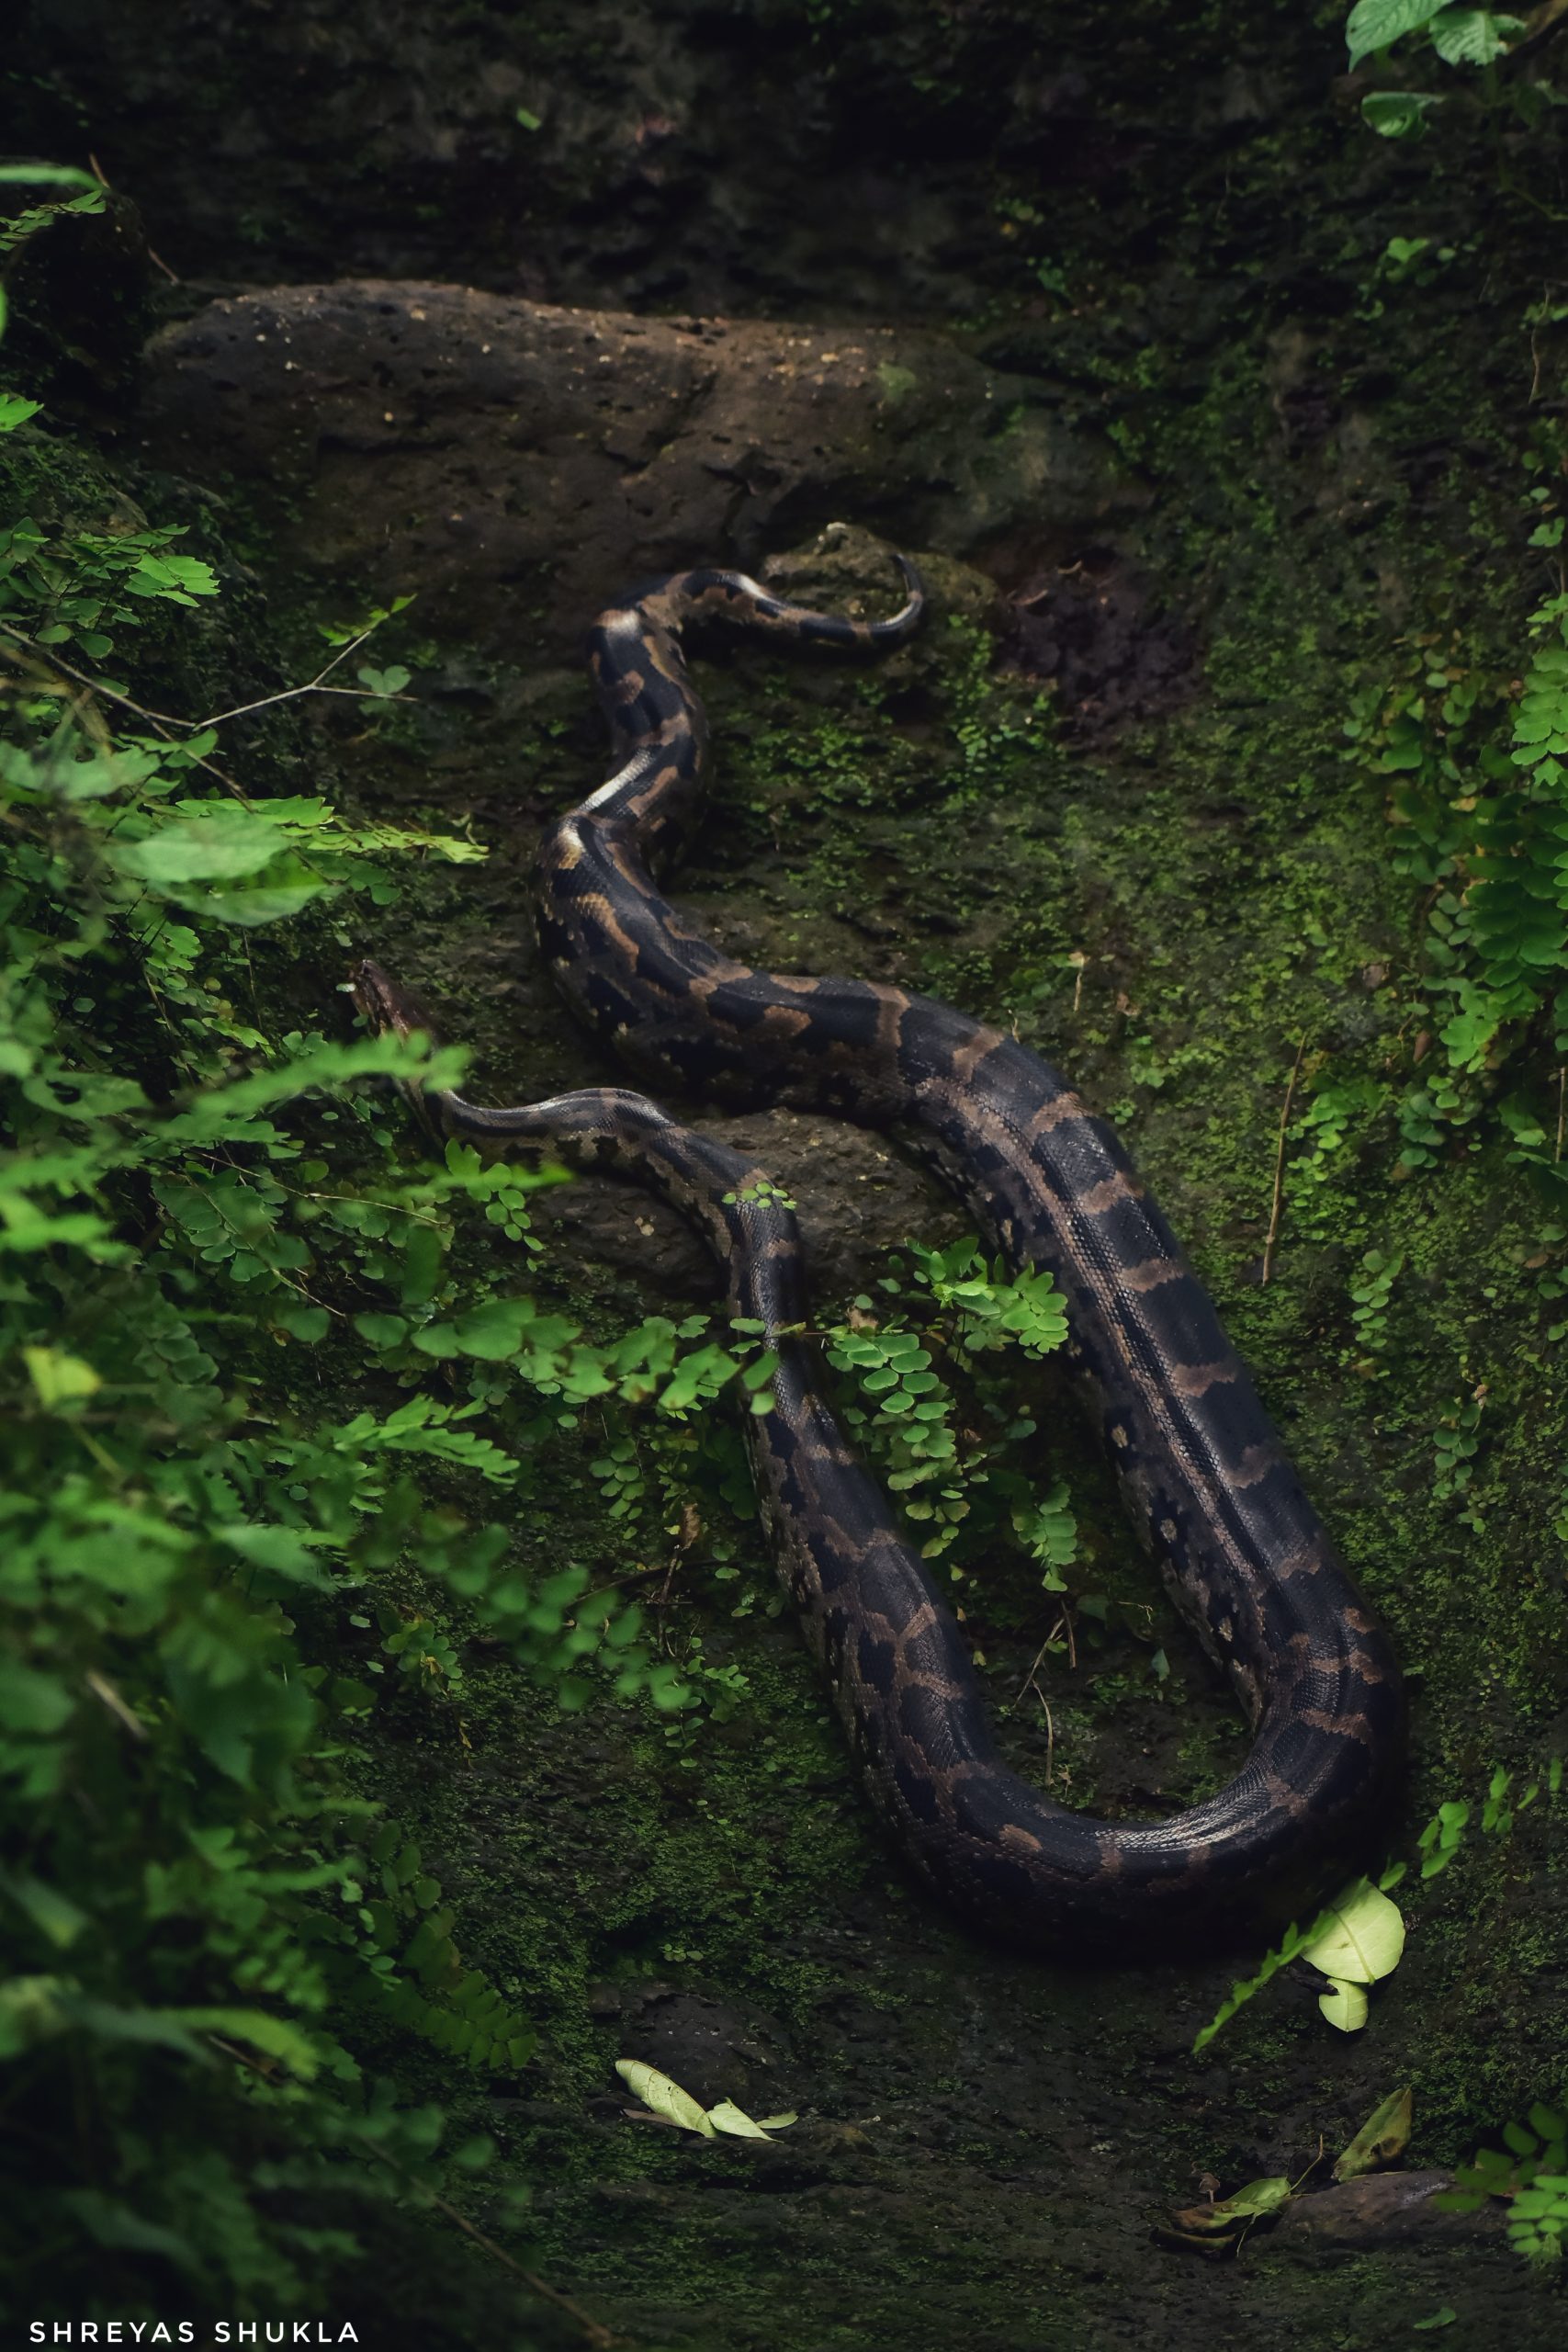 Giant Python in it’s Habitat